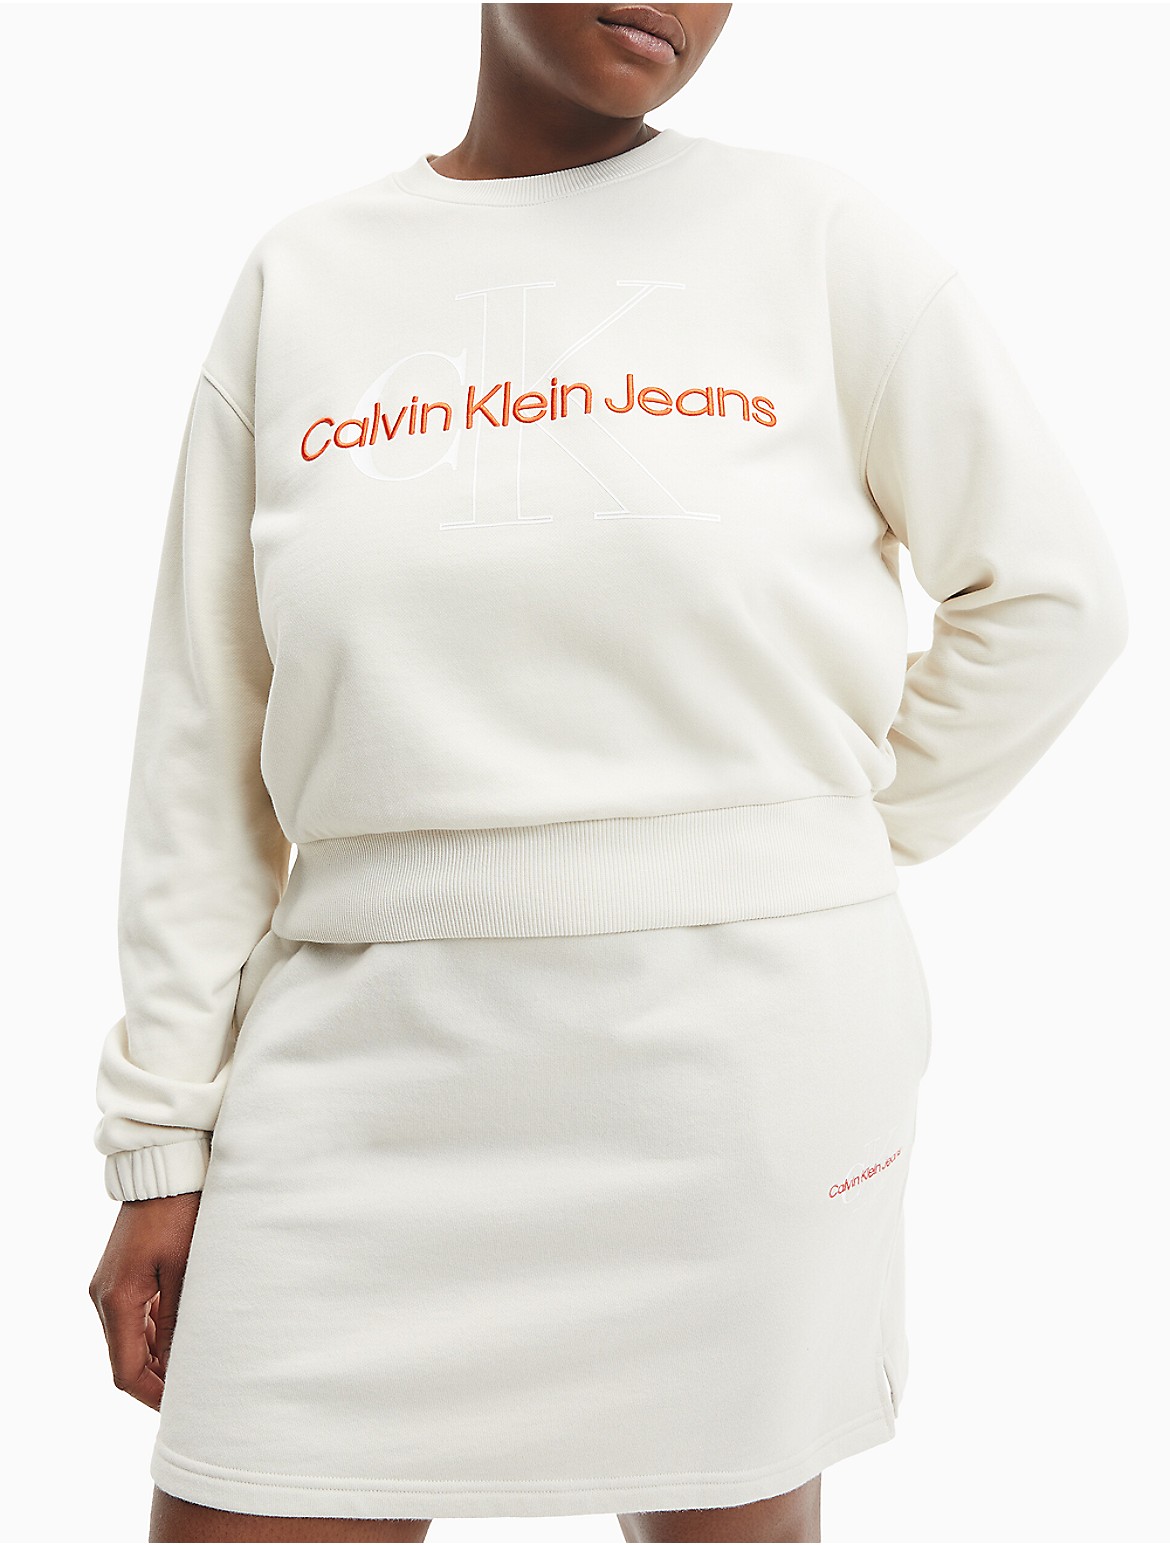 Calvin Klein Women's Two Tone Plus Size Monogram Sweatshirt - White - 2XL